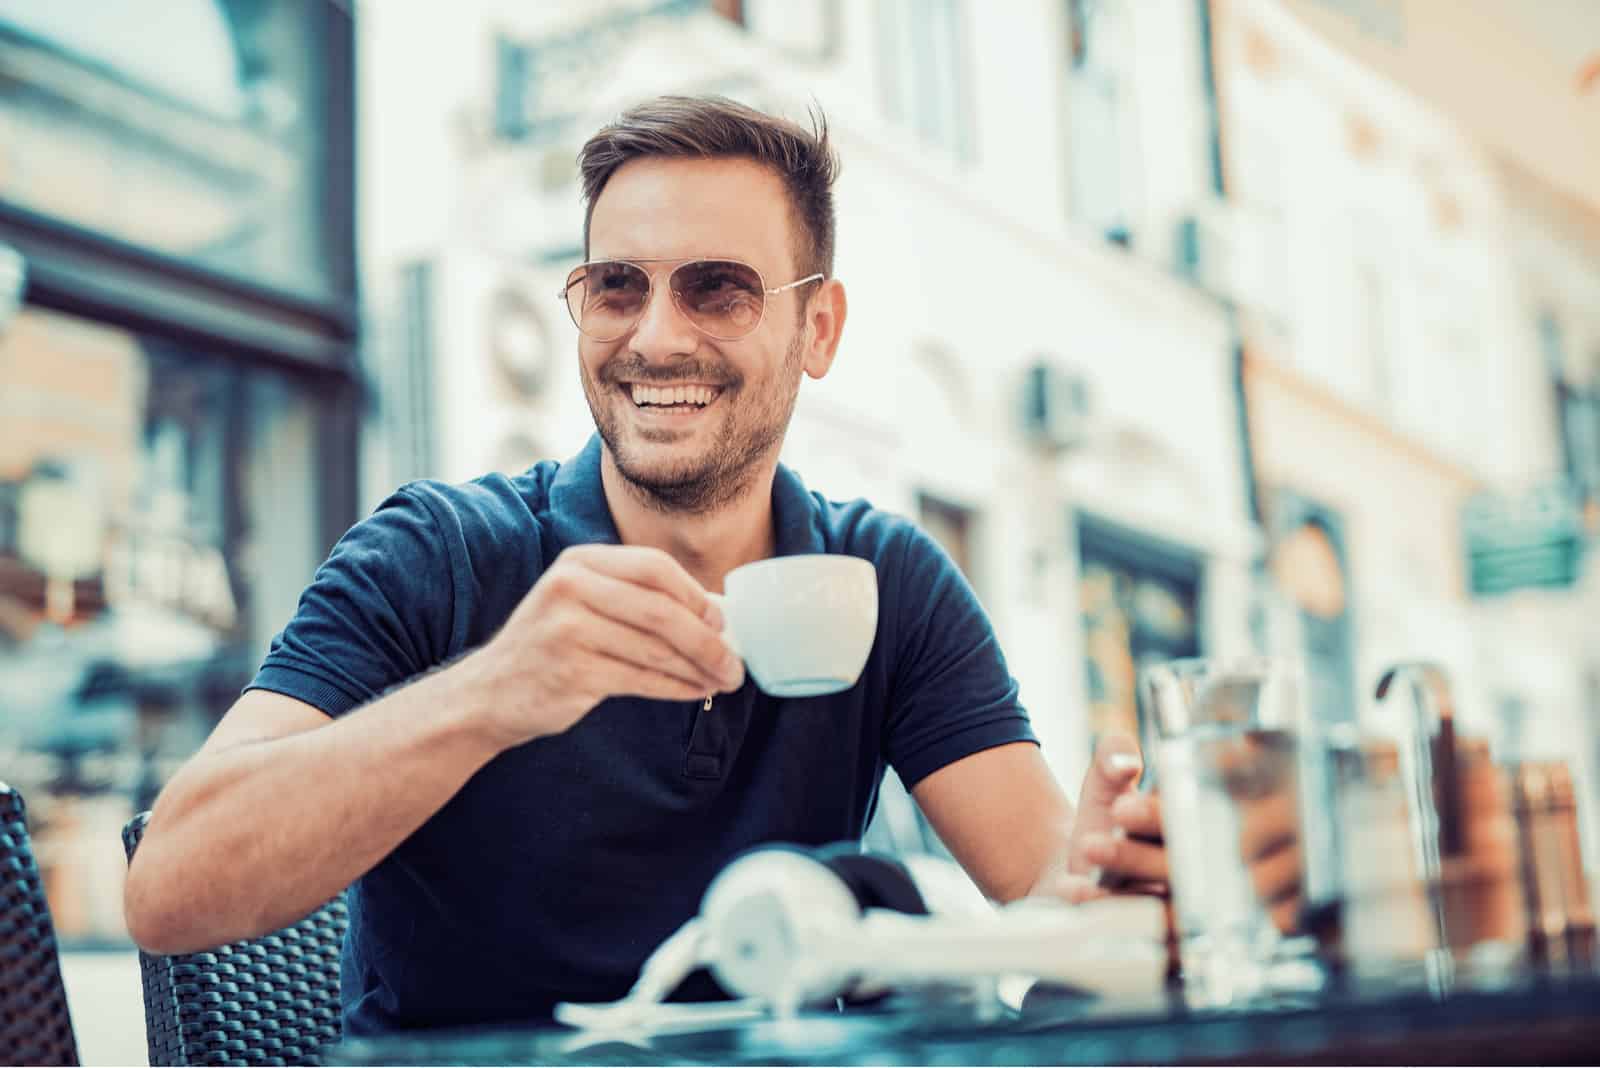 un homme souriant avec des lunettes sur la tête est assis à l'air libre tenant une tasse et regarde ailleurs